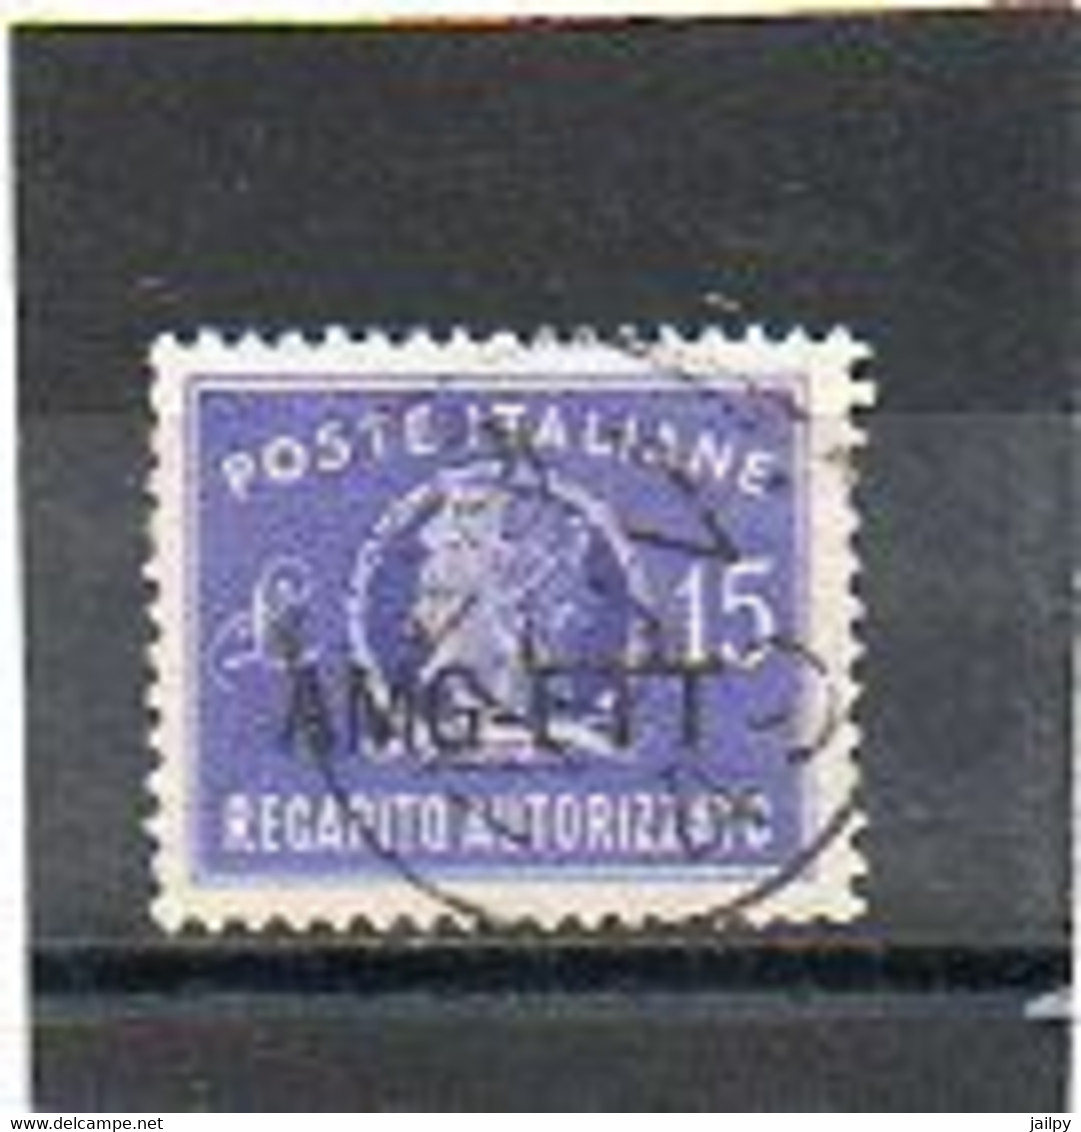 ITALIE   TRIESTE   AMG FTT    Timbre Fiscal    15 Lire   1949   Oblitéré - Steuermarken